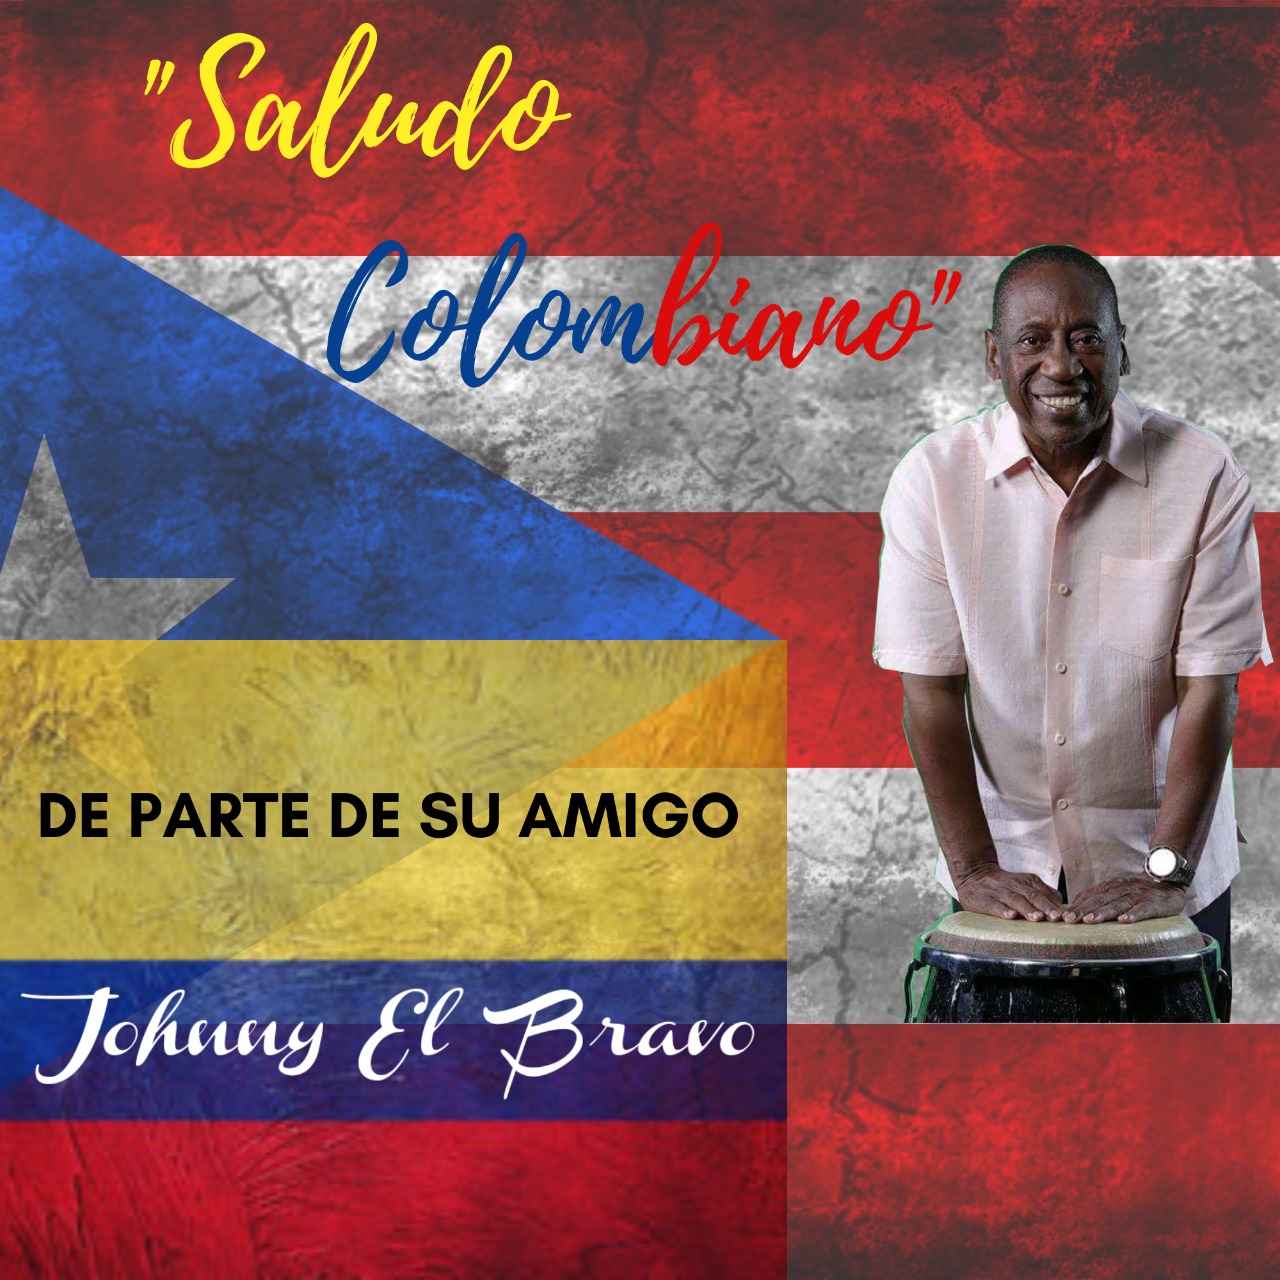 Johnny el Bravo Saludo Colombiano Label.jpg